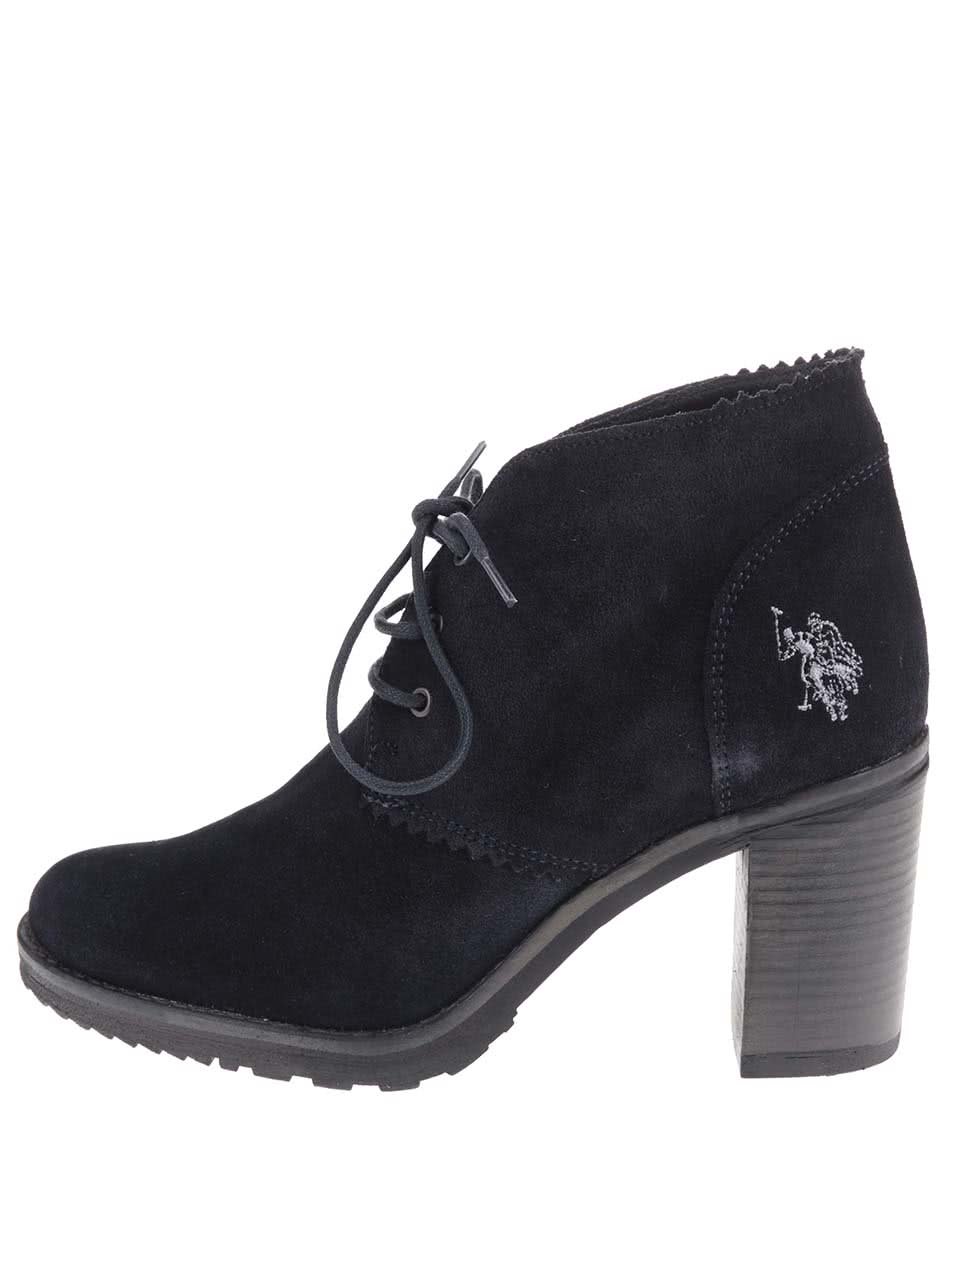 Černé dámské kožené boty na podpatku U.S. Polo Assn. Maruska